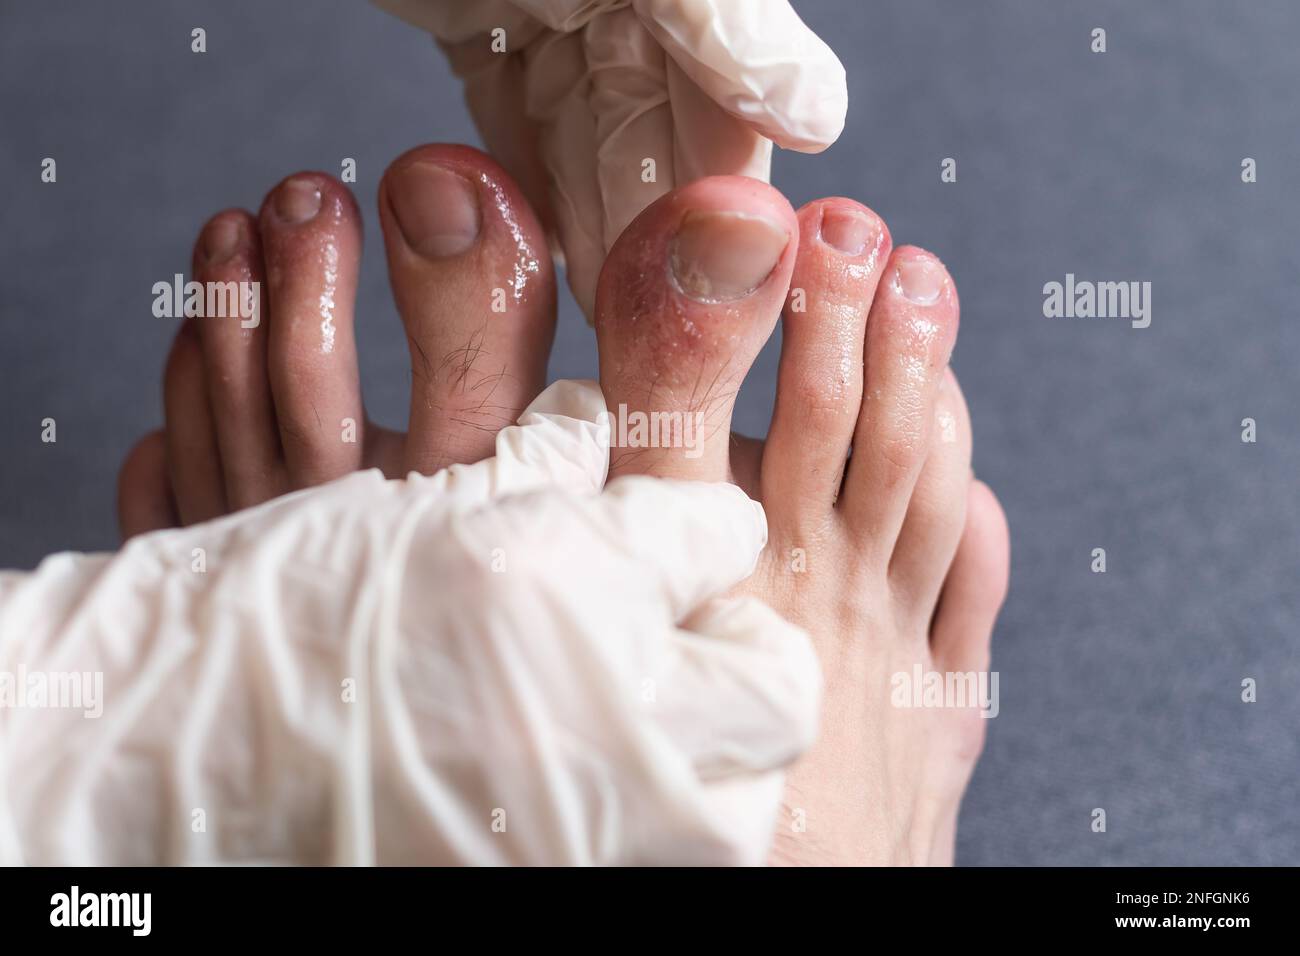 Orteils Covid. Symptômes du coronavirus - gonflement et décoloration,  couleur violacée, douleur et peau rugueuse Photo Stock - Alamy